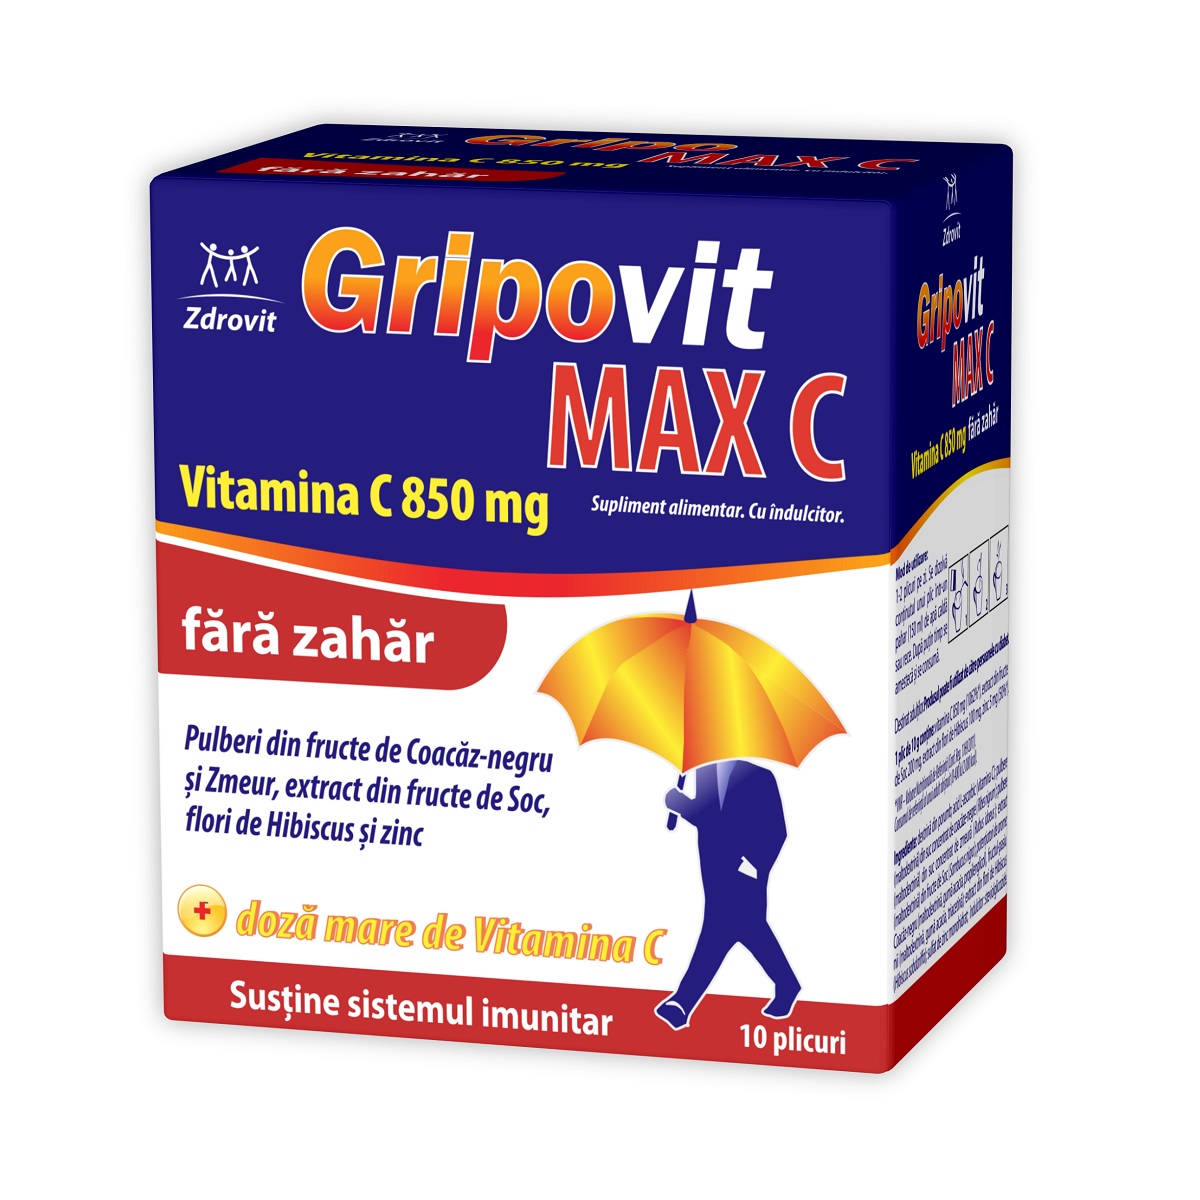 Imunitate și suport - Gripovit Max C fara zahar x 10pl (Zdrovit), epastila.ro